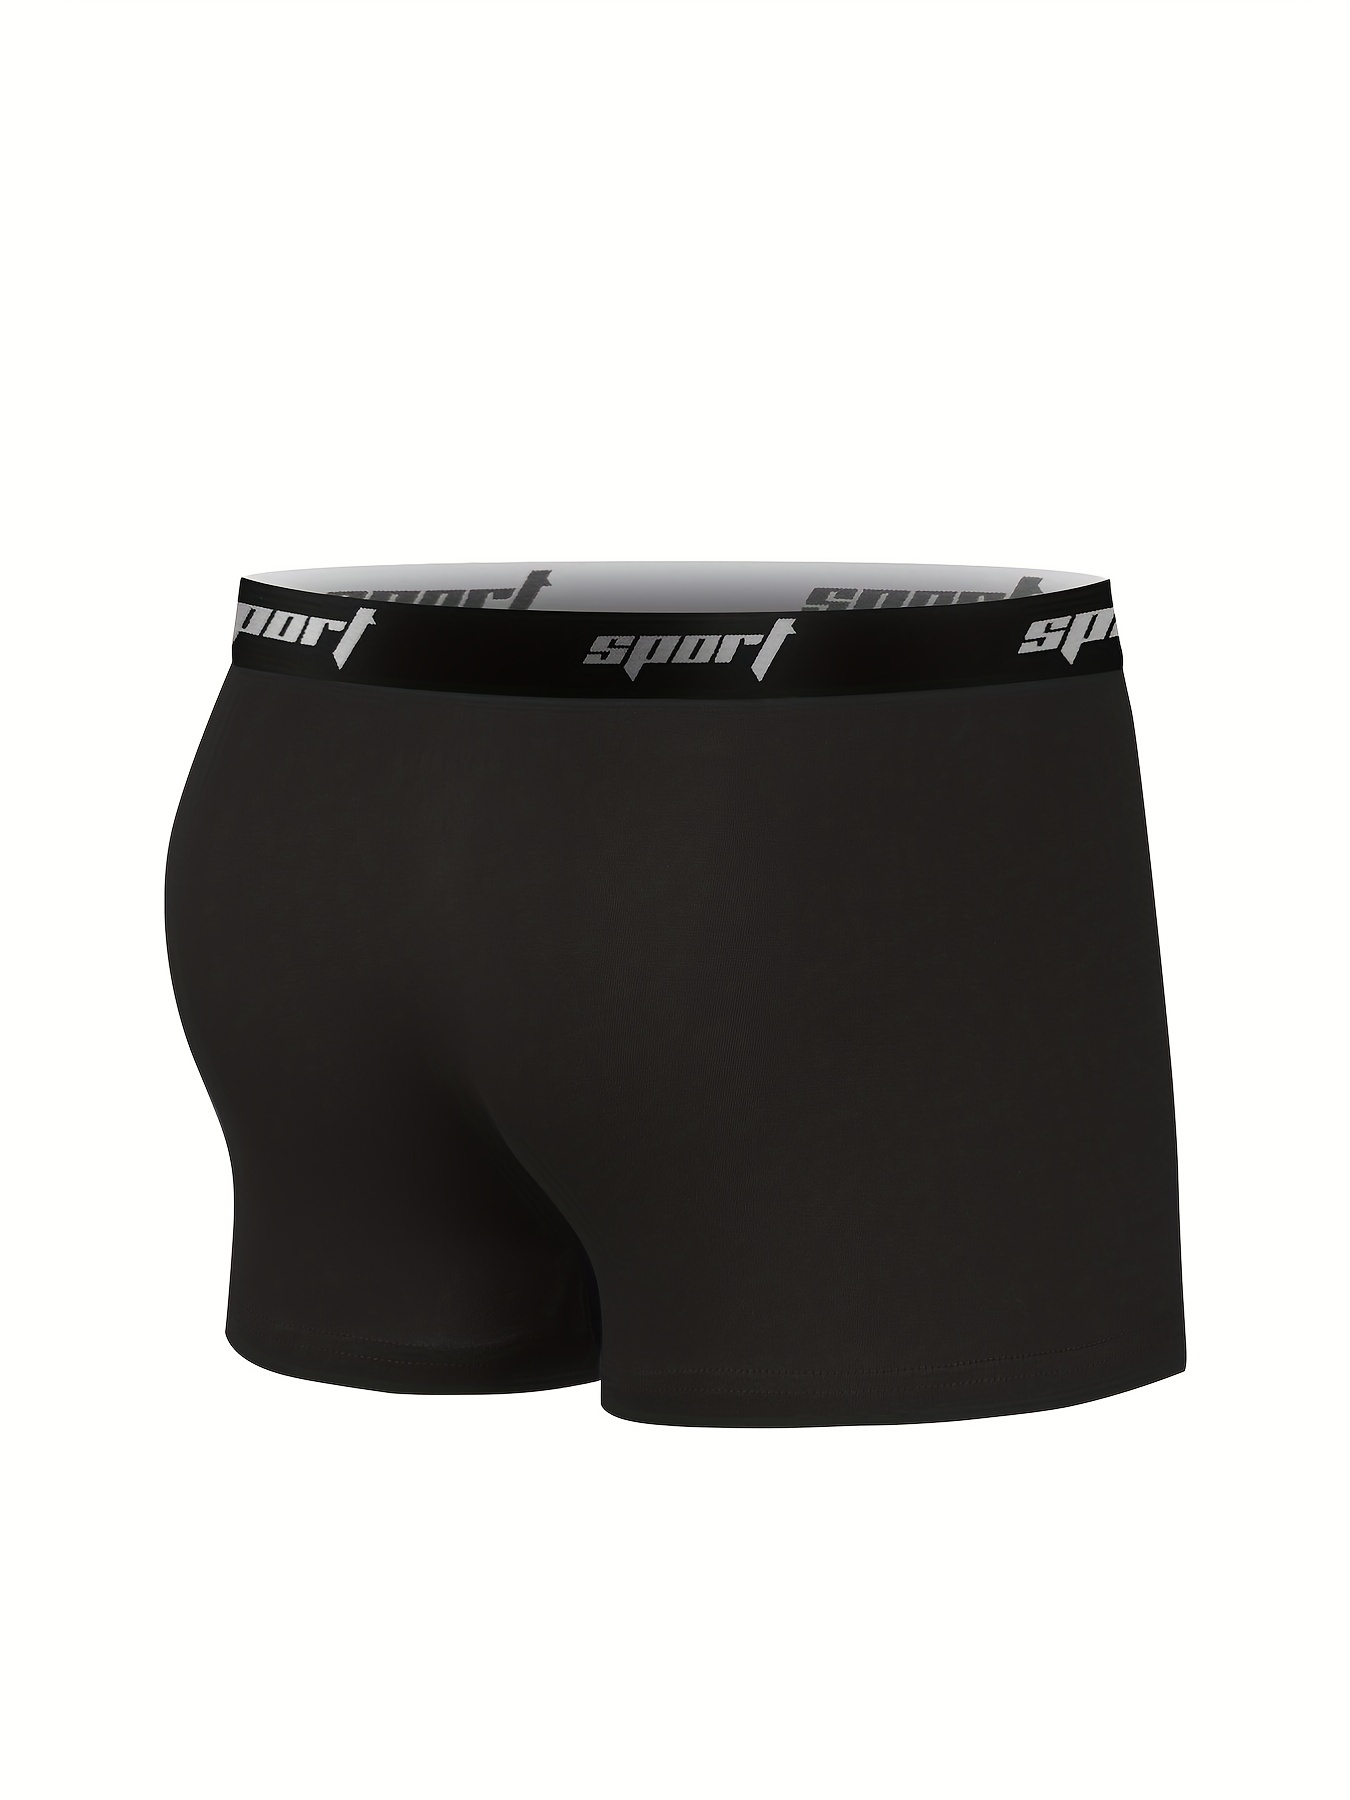 Lycra Cotton Plain Calvin Klein Underwear, Type: Boxer Briefs at